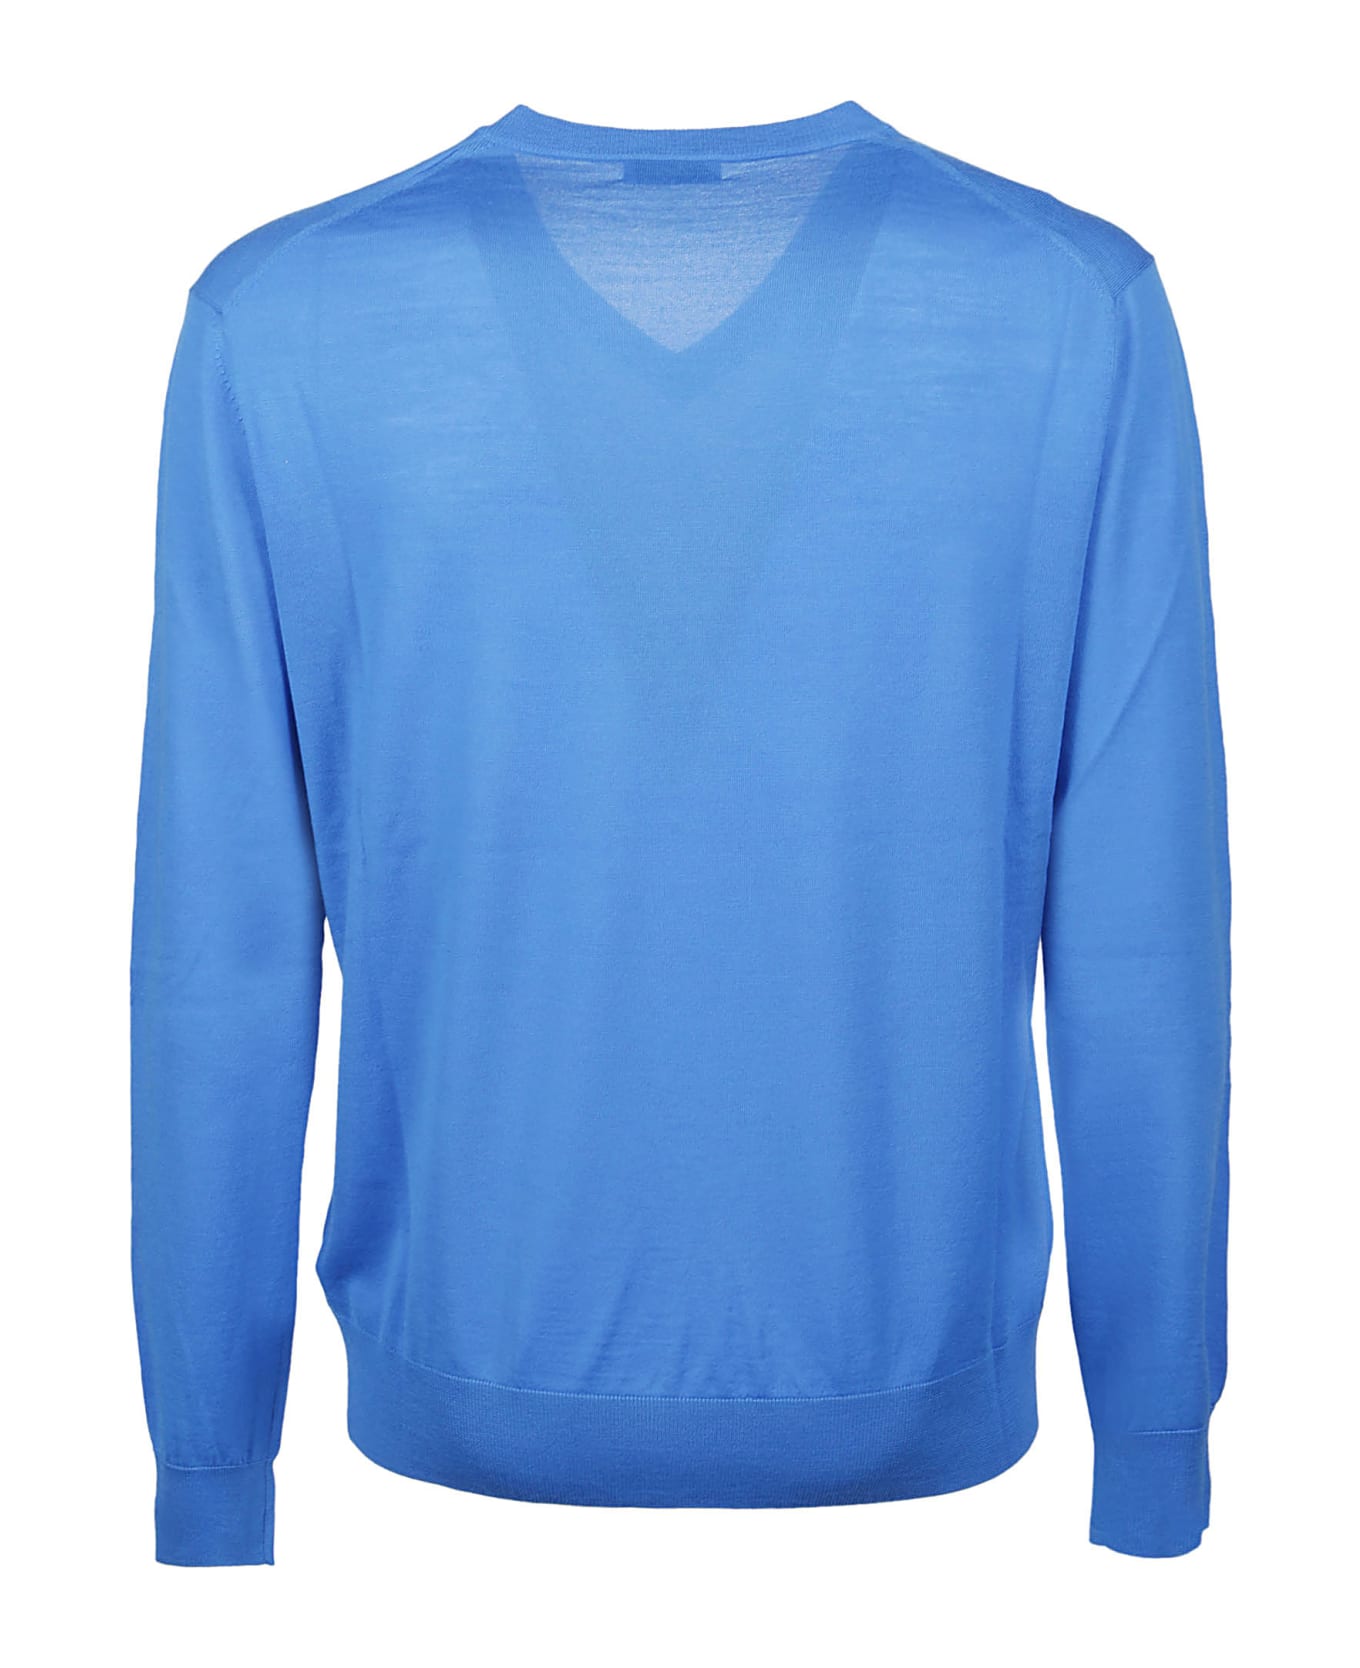 Ballantyne Plain Sweater - Cobalto ニットウェア